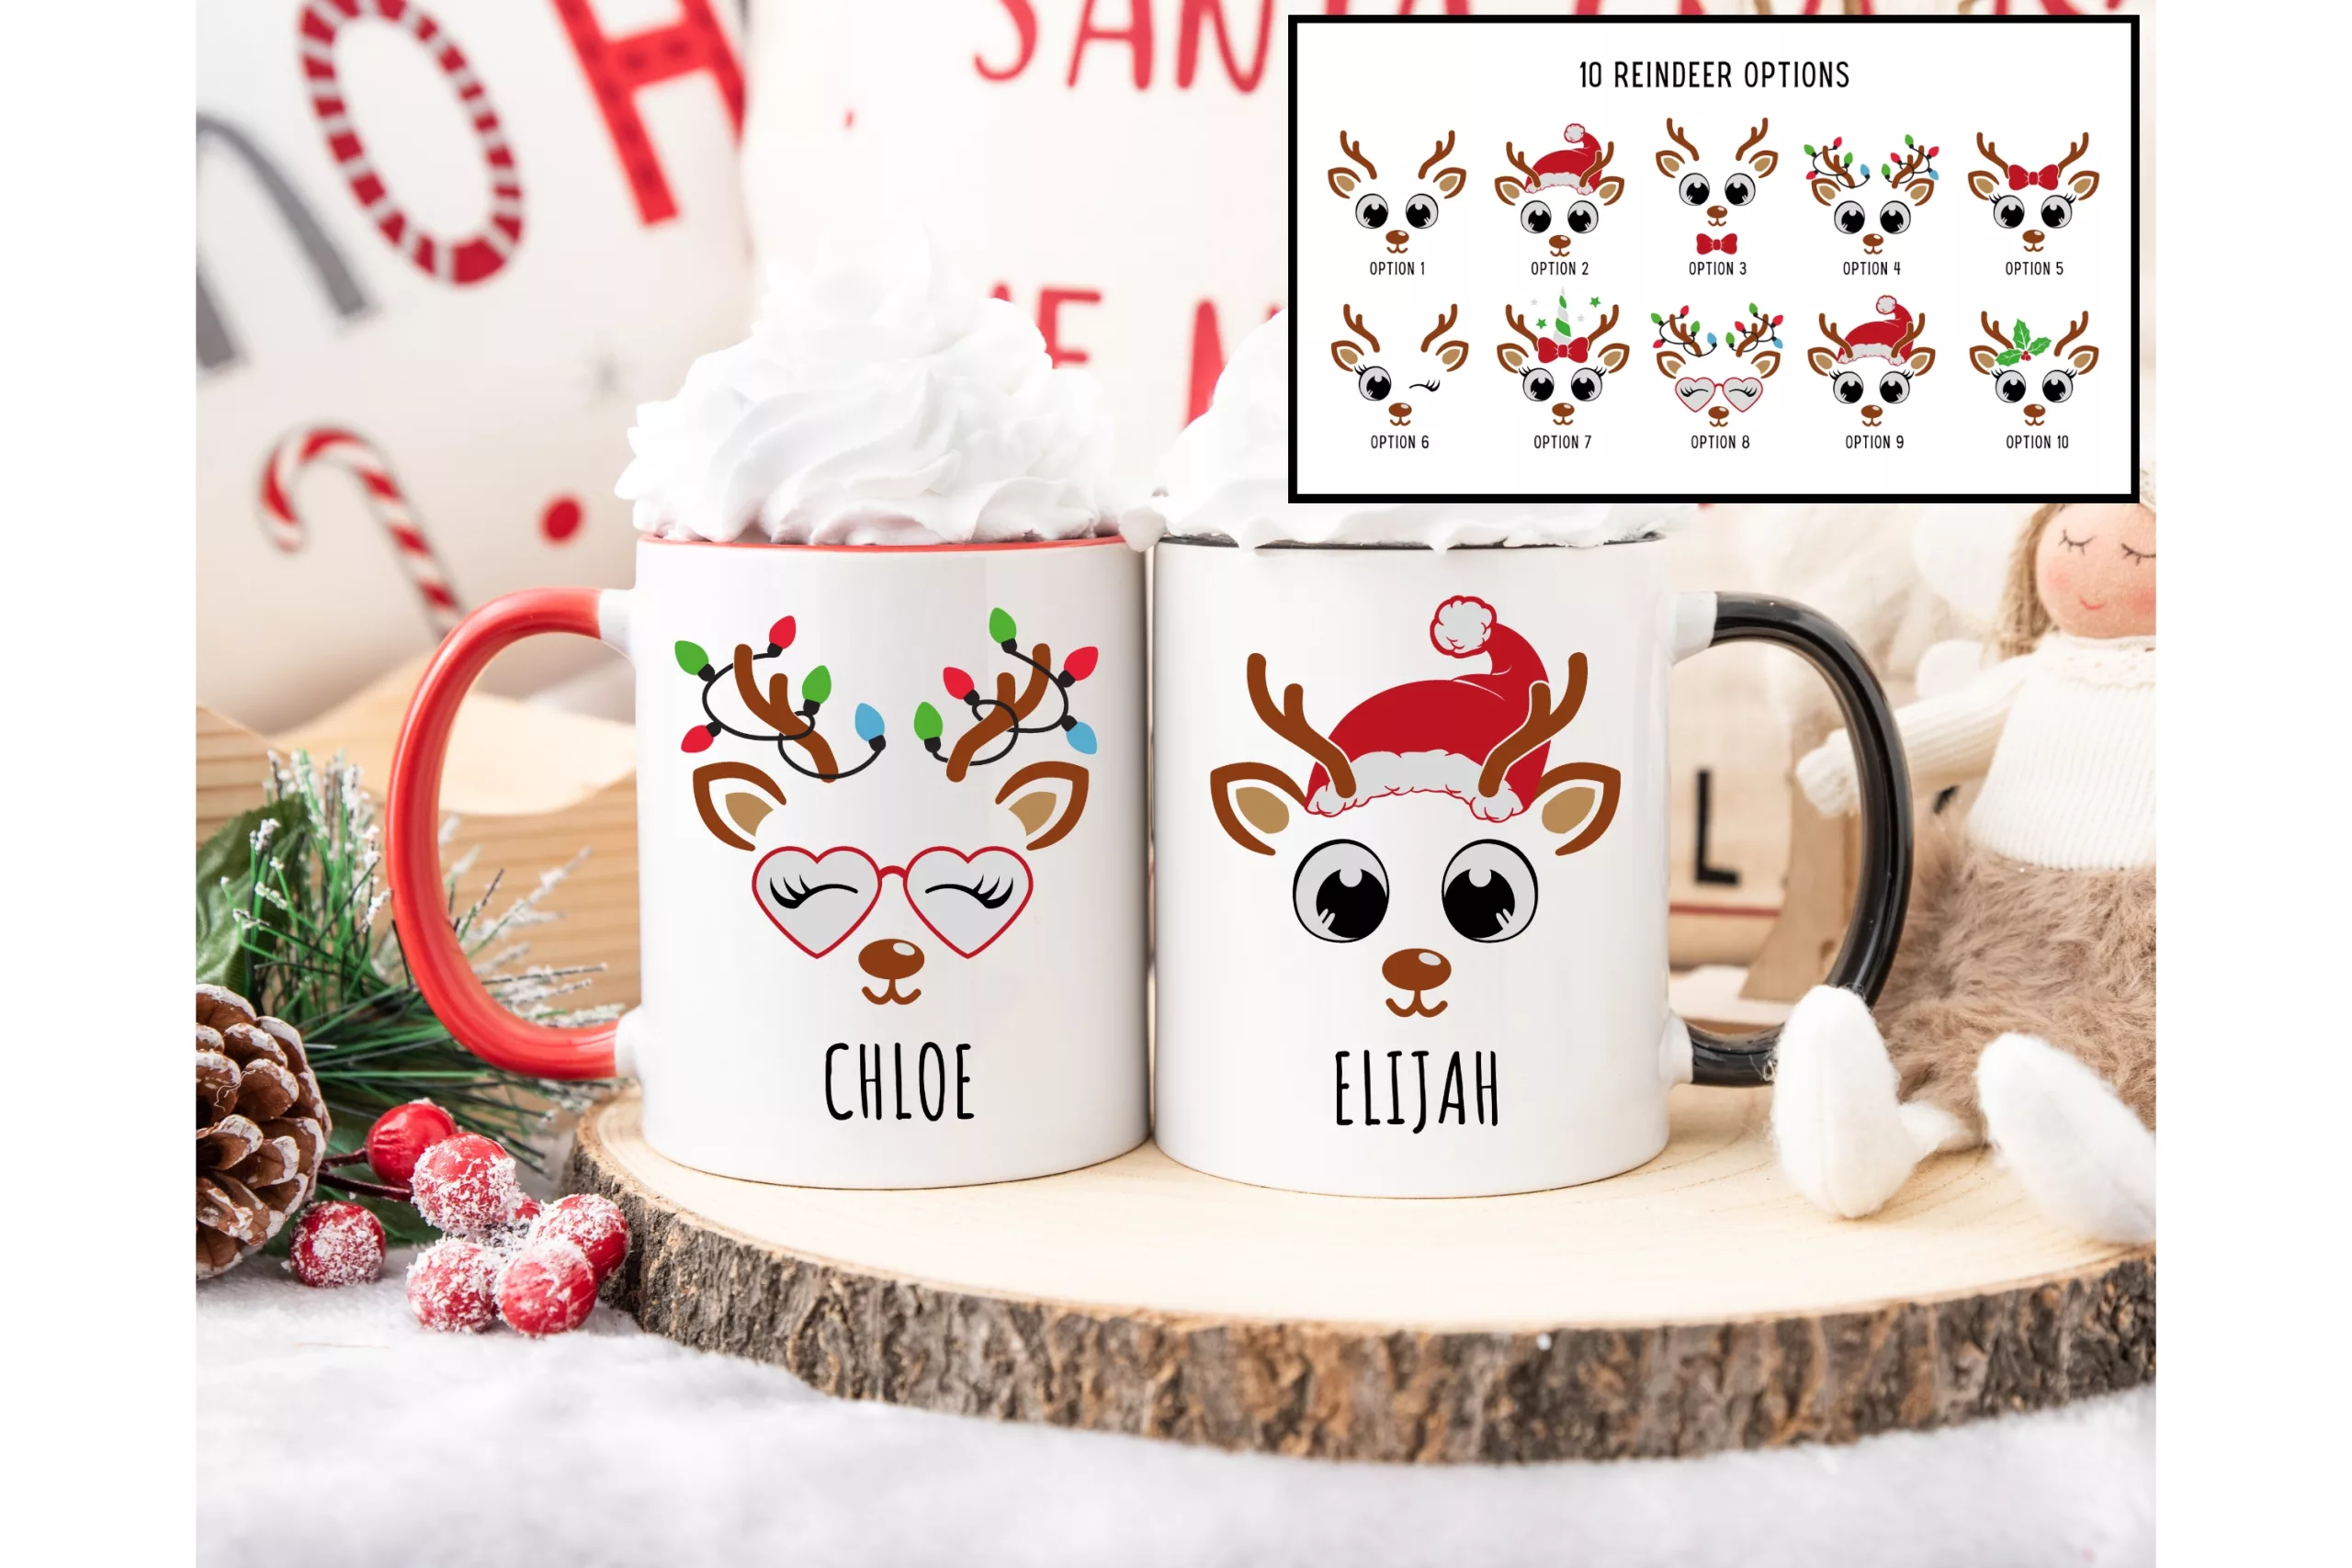 Personalized Christmas Mug For Kids, Reindeer Mug, Kids Hot Chocolate Mug